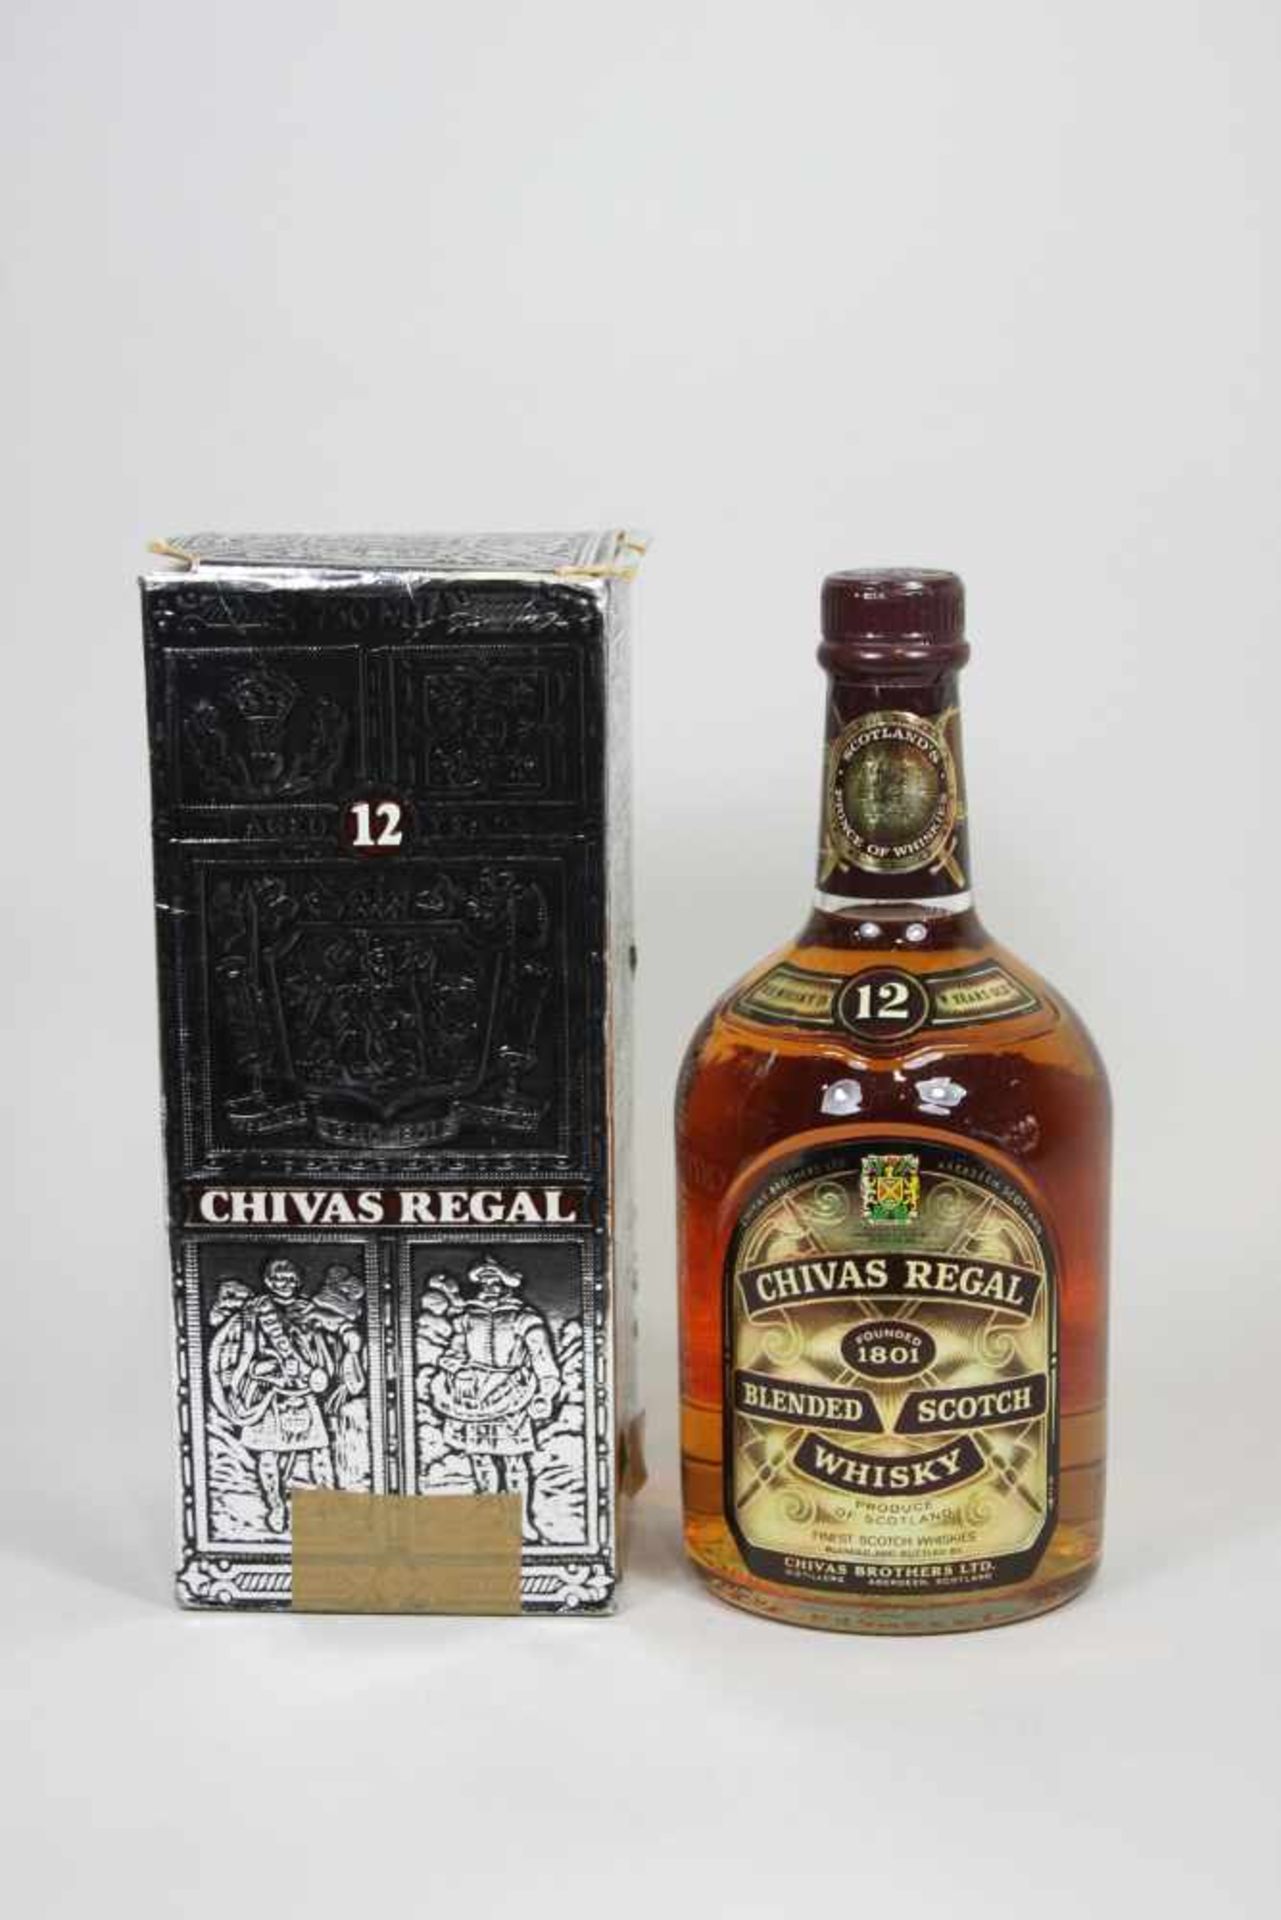 Flasche Chivas Regal Scotch Whiskey, 75 cl., 43% vol. im original Karton.